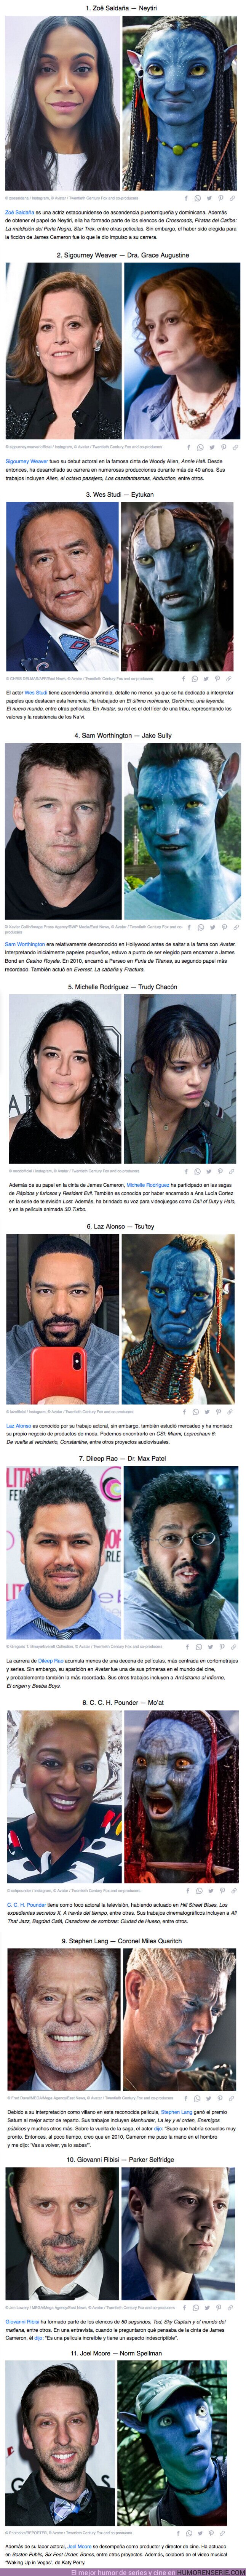 68578 - GALERÍA: 11 Personajes de “Avatar” y sus actores en la vida real